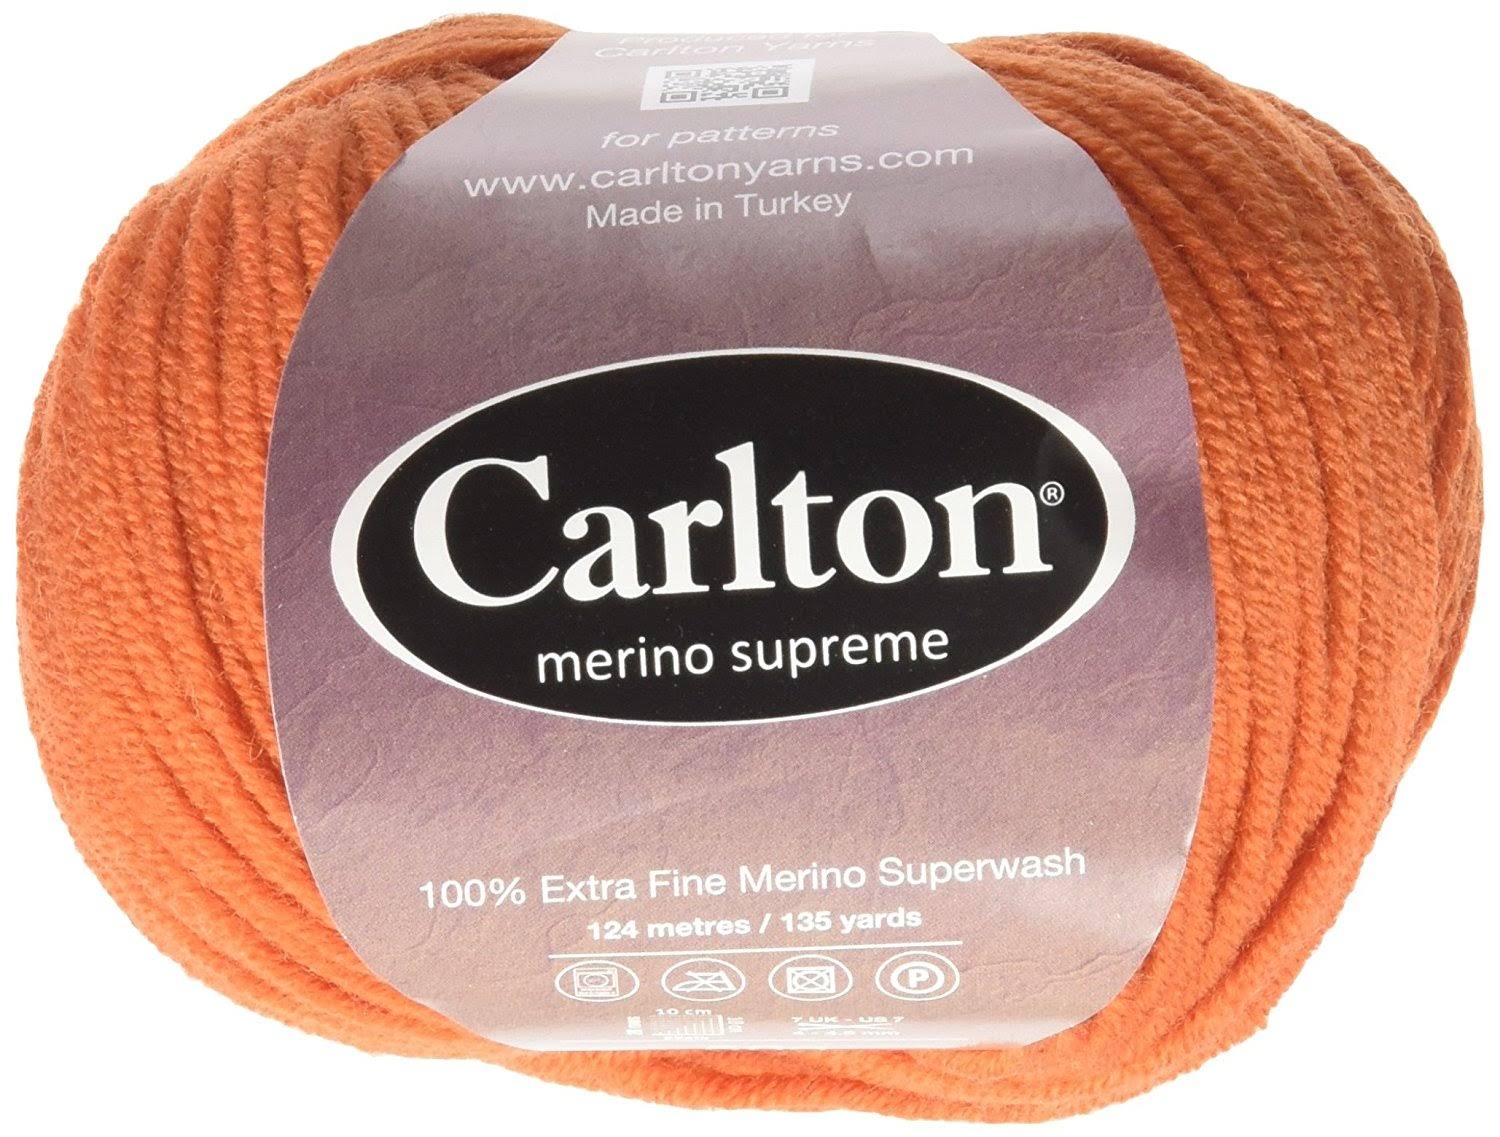 Carlton MERSUP23 Merino Supreme 23 Yarn, 1 Bag Fits 5 Skeins - Orange